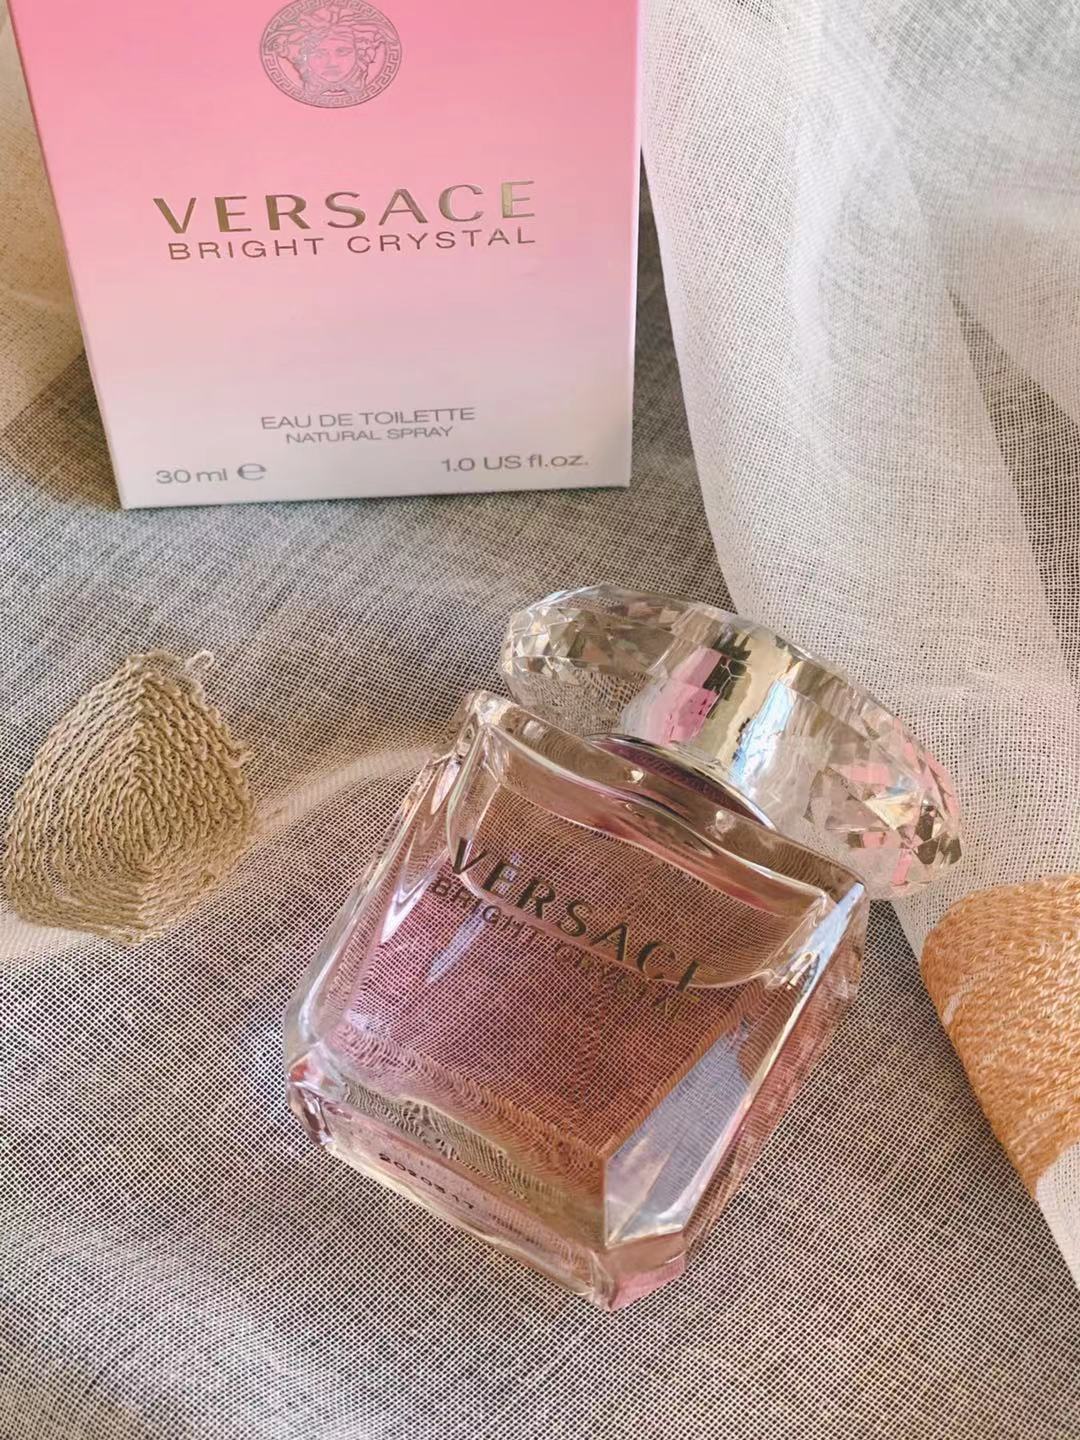 Versace范思哲香恋女士香水